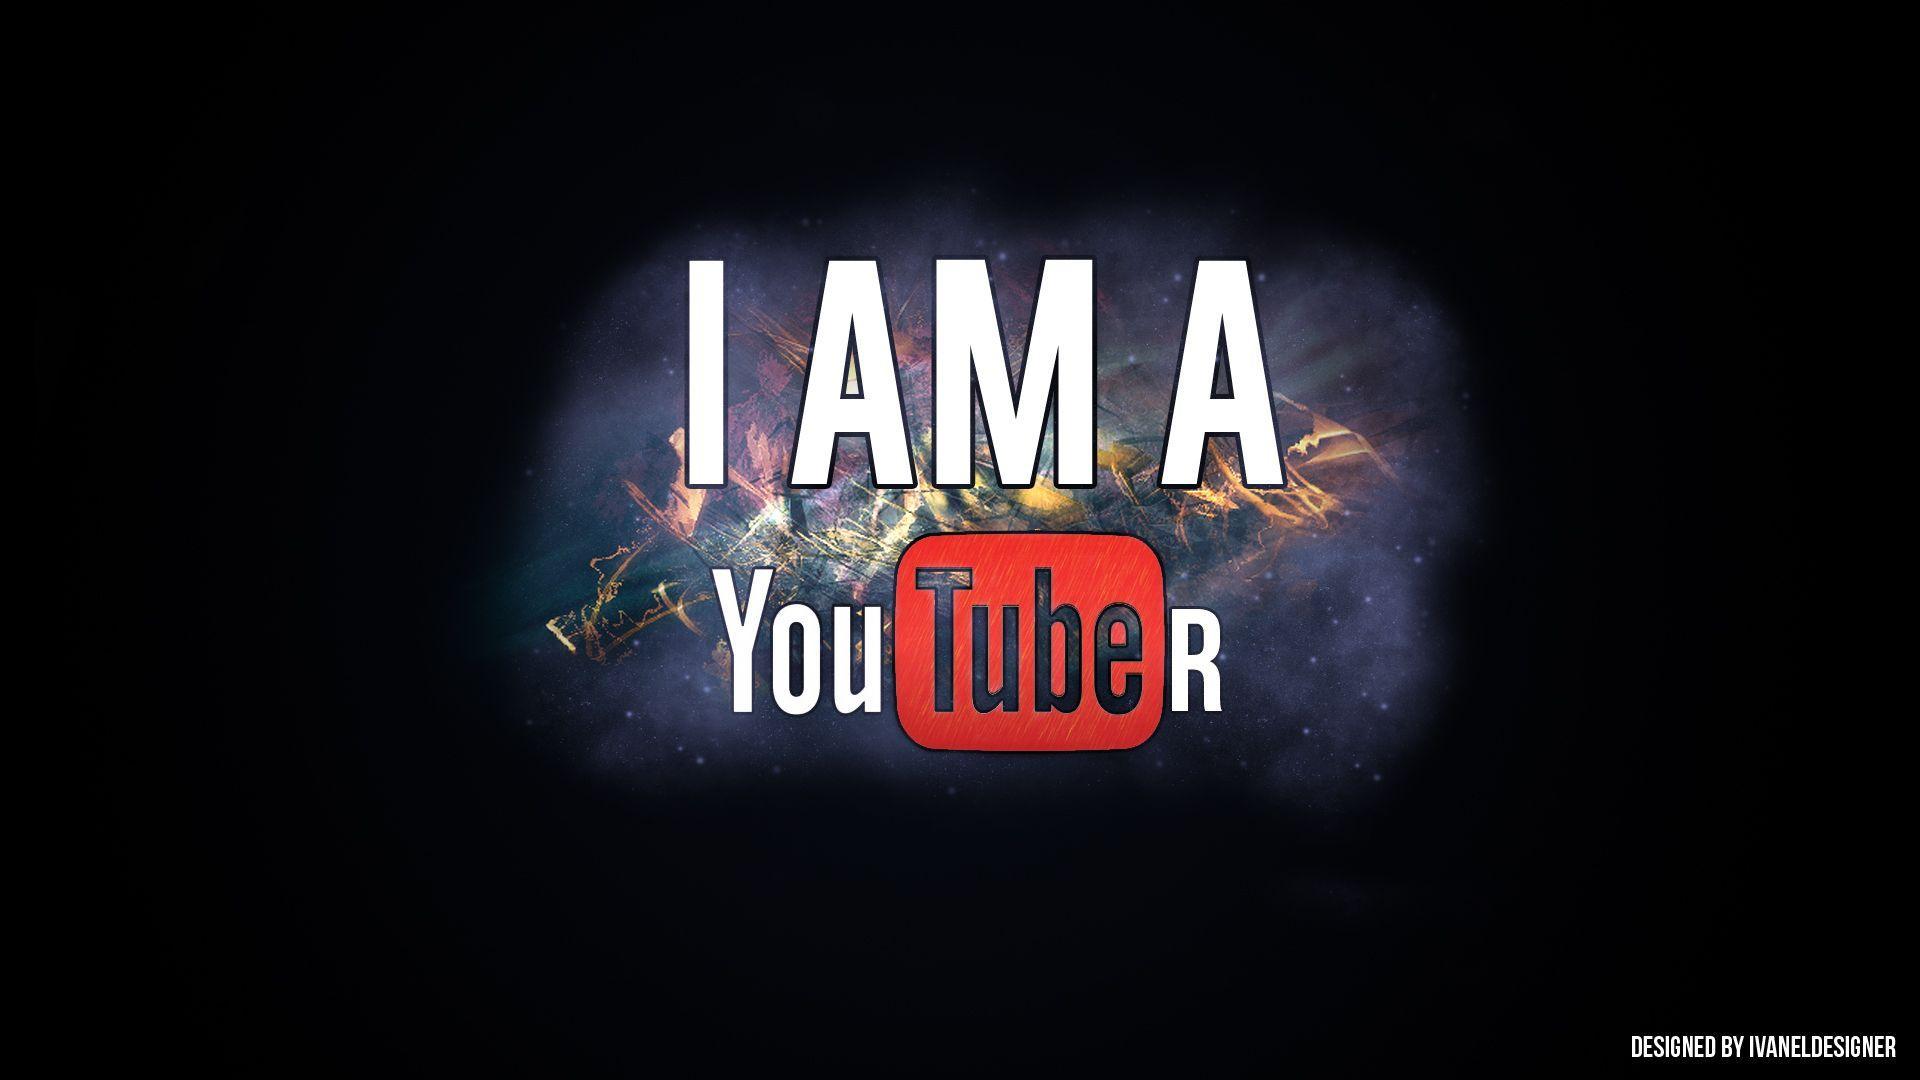 YouTubers Logos Wallpaper Free YouTubers Logos Background